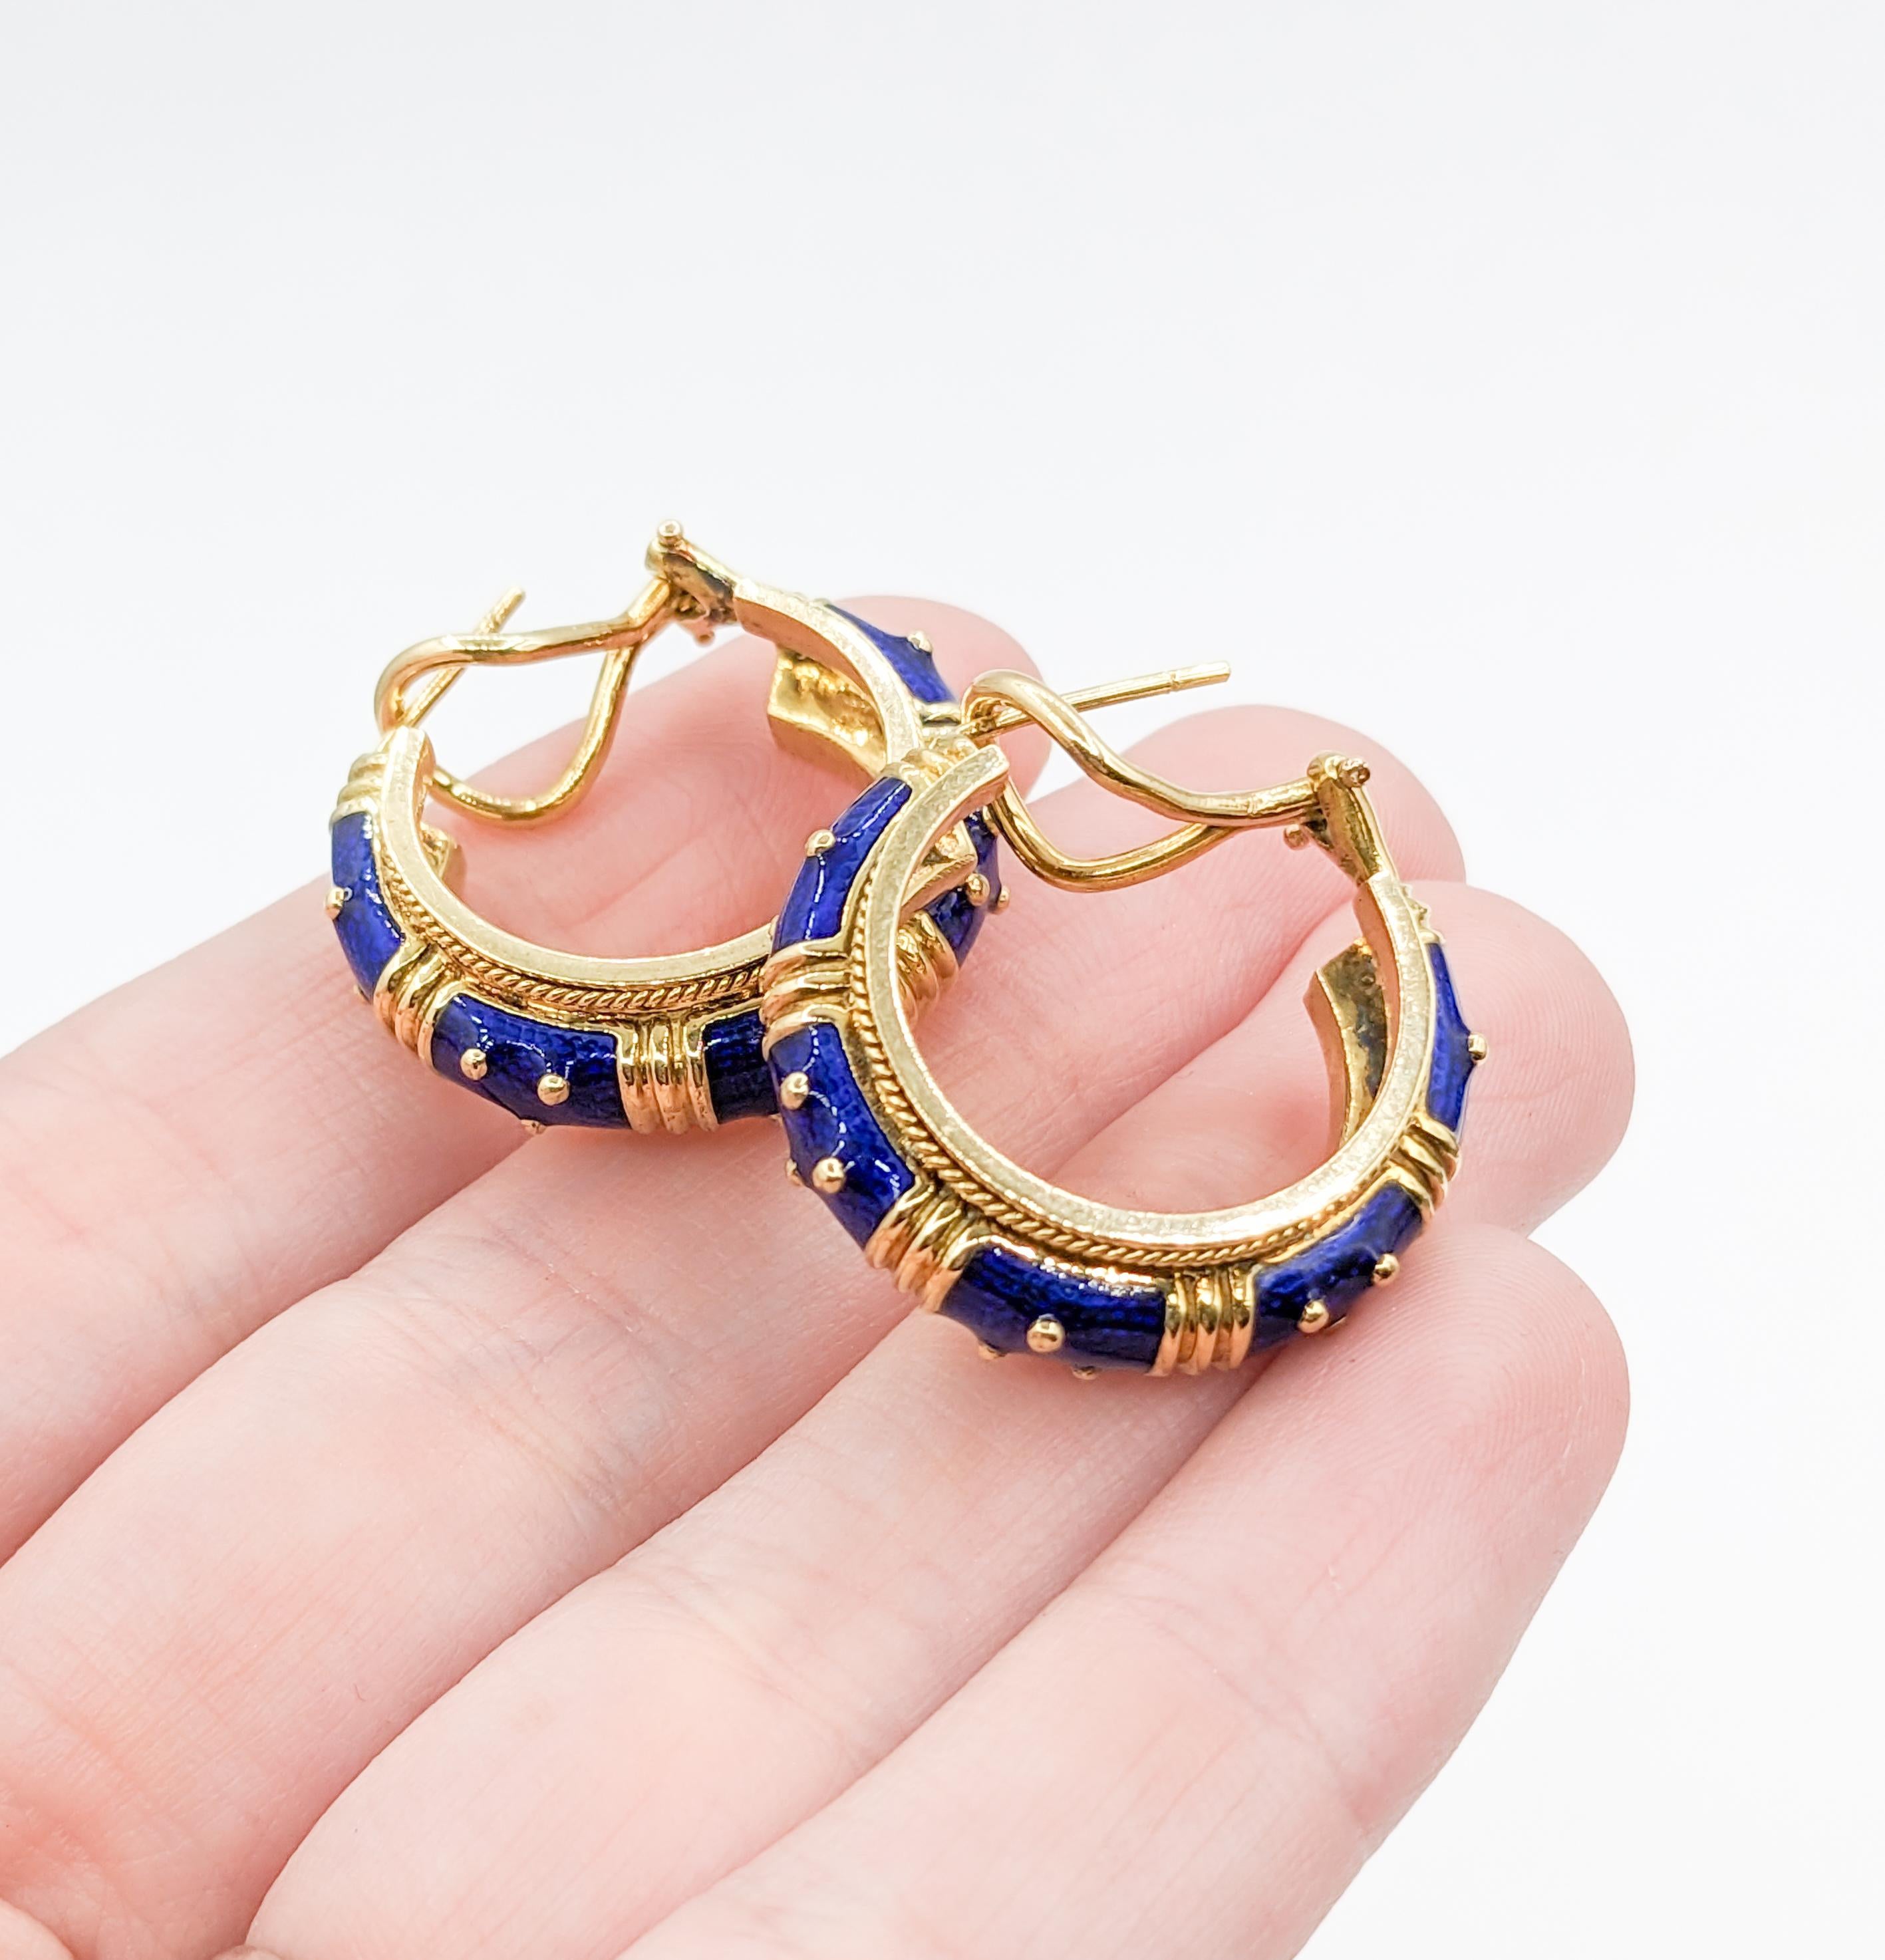 Leuchtend blaue Emaille Hidalgo Hoop Omega Ohrringe

Mit diesen Hidalgo Ohrringen können Sie Ihren Stil aufpeppen! Diese bezaubernden Ohrringe aus 18-karätigem Gelbgold mit 14-karätiger Omega-Rückseite bestechen durch ihre blaue Emaille mit dem